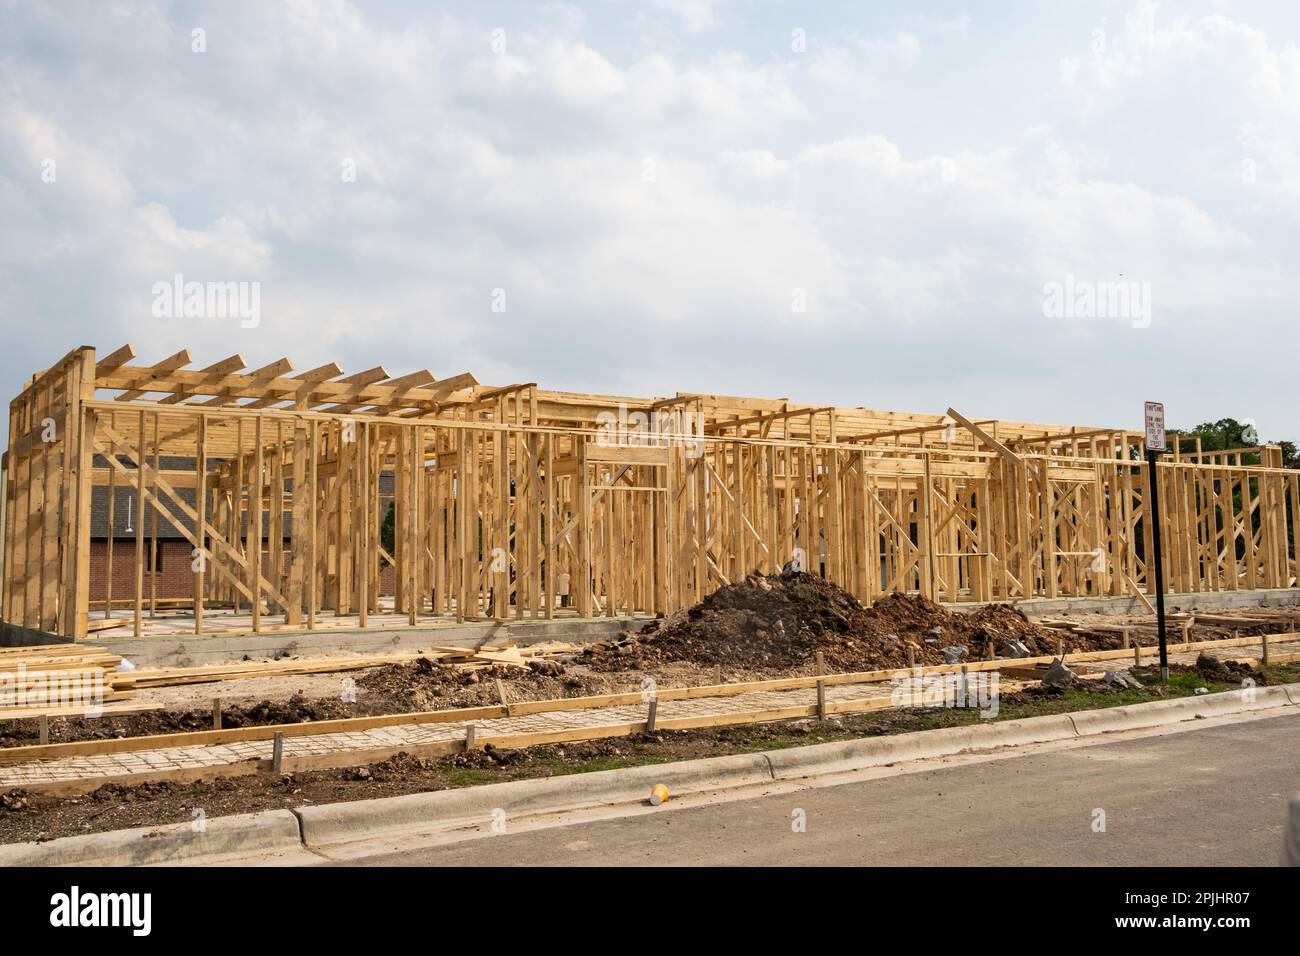 Georgetown, Texas USA - cadre en bois de la nouvelle maison en construction Banque D'Images